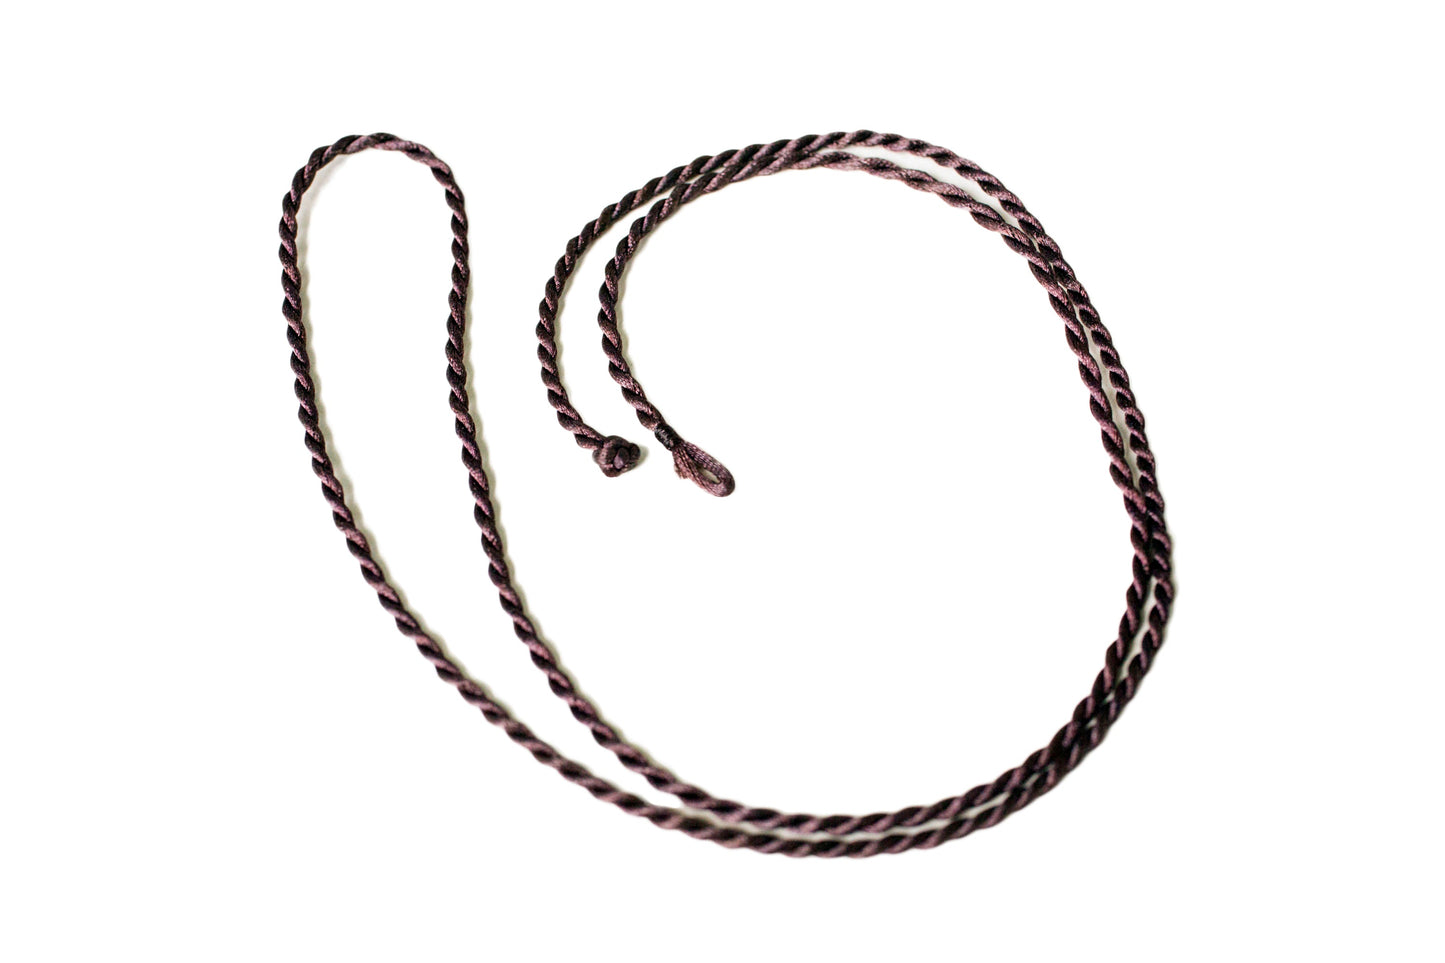 Dorje Vajra *Large* Brass Pendant Necklace